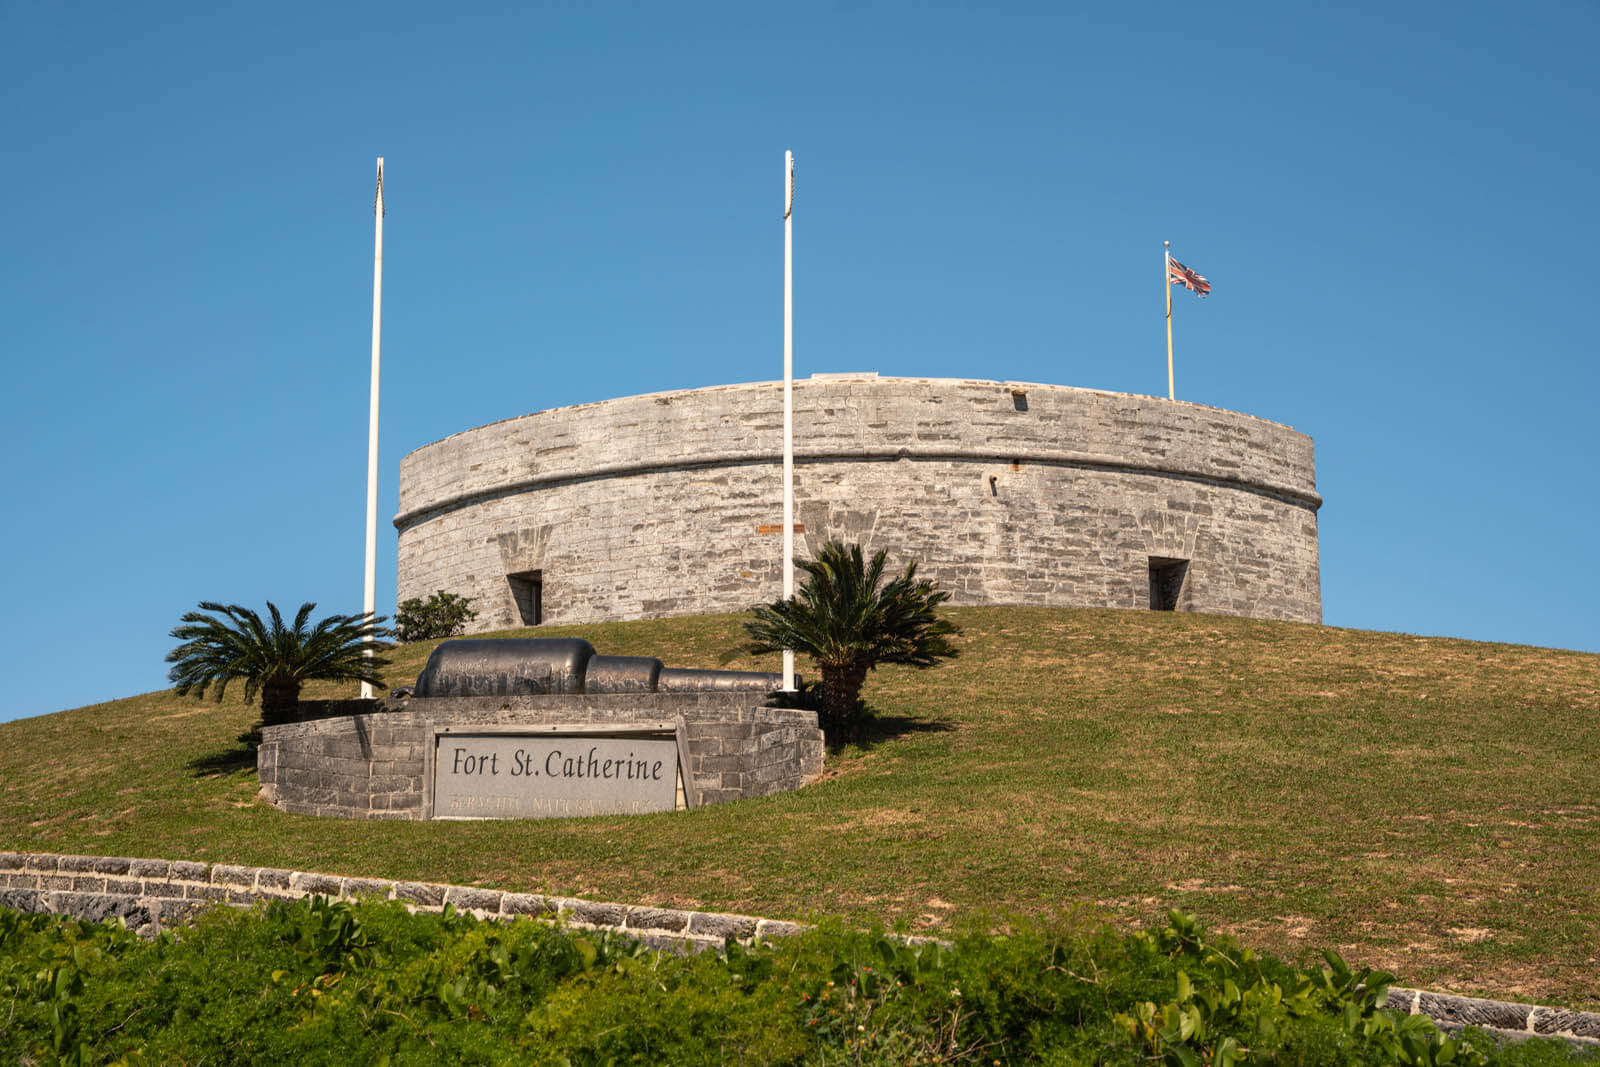 Fort St. Catherine in Bermuda